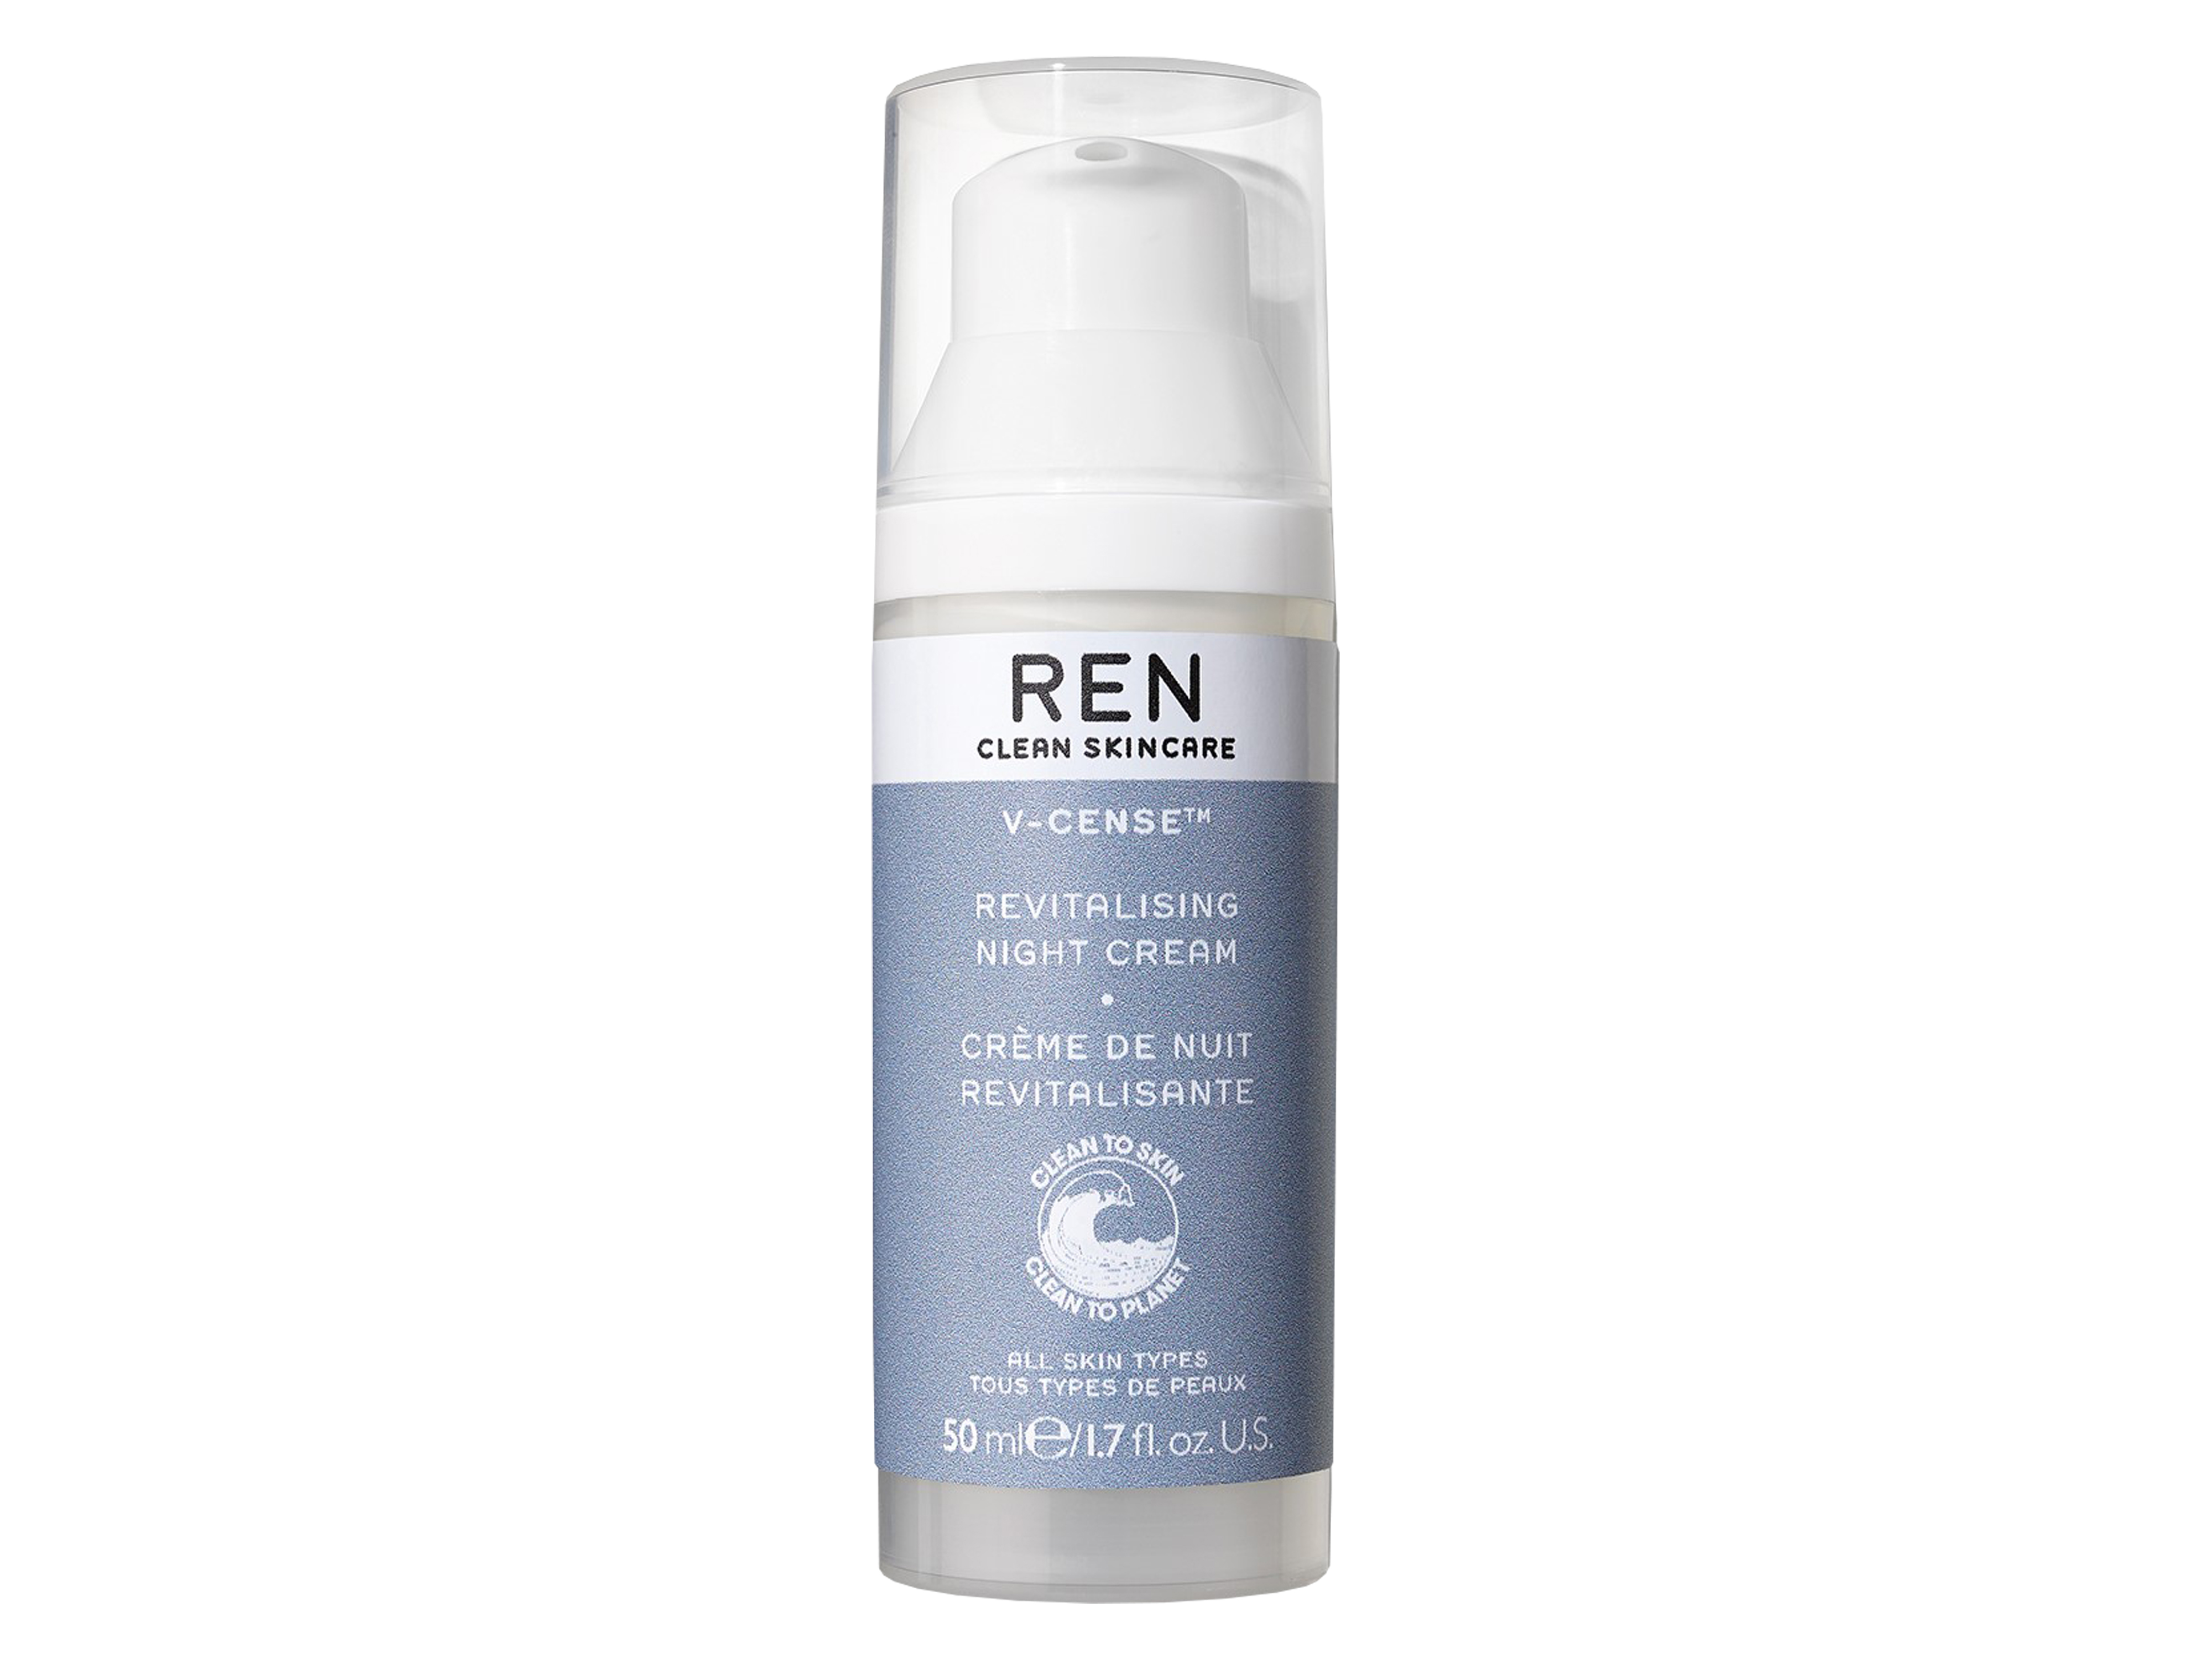 REN V-Cense Revitalising Night Cream, 50 ml